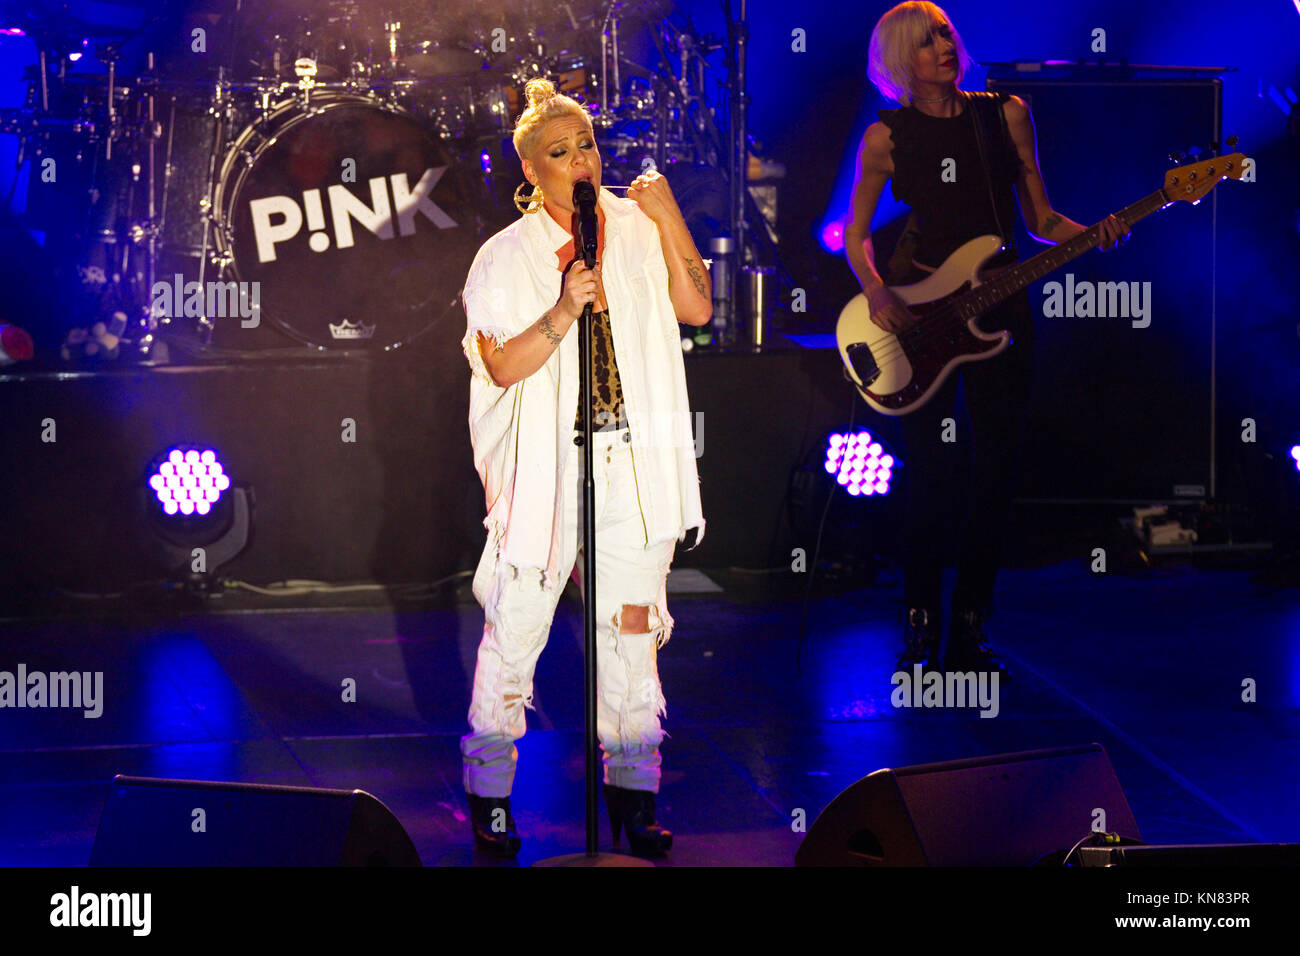 Berlín, Alemania. 09Dec, 2017. Pink realiza en vivo en el escenario como parte de "ProSieben en Concierto" en el Columbia Halle en diciembre 9,2017 en Berlín, Alemania. Crédito: Geisler-Fotopress/Alamy Live News Foto de stock